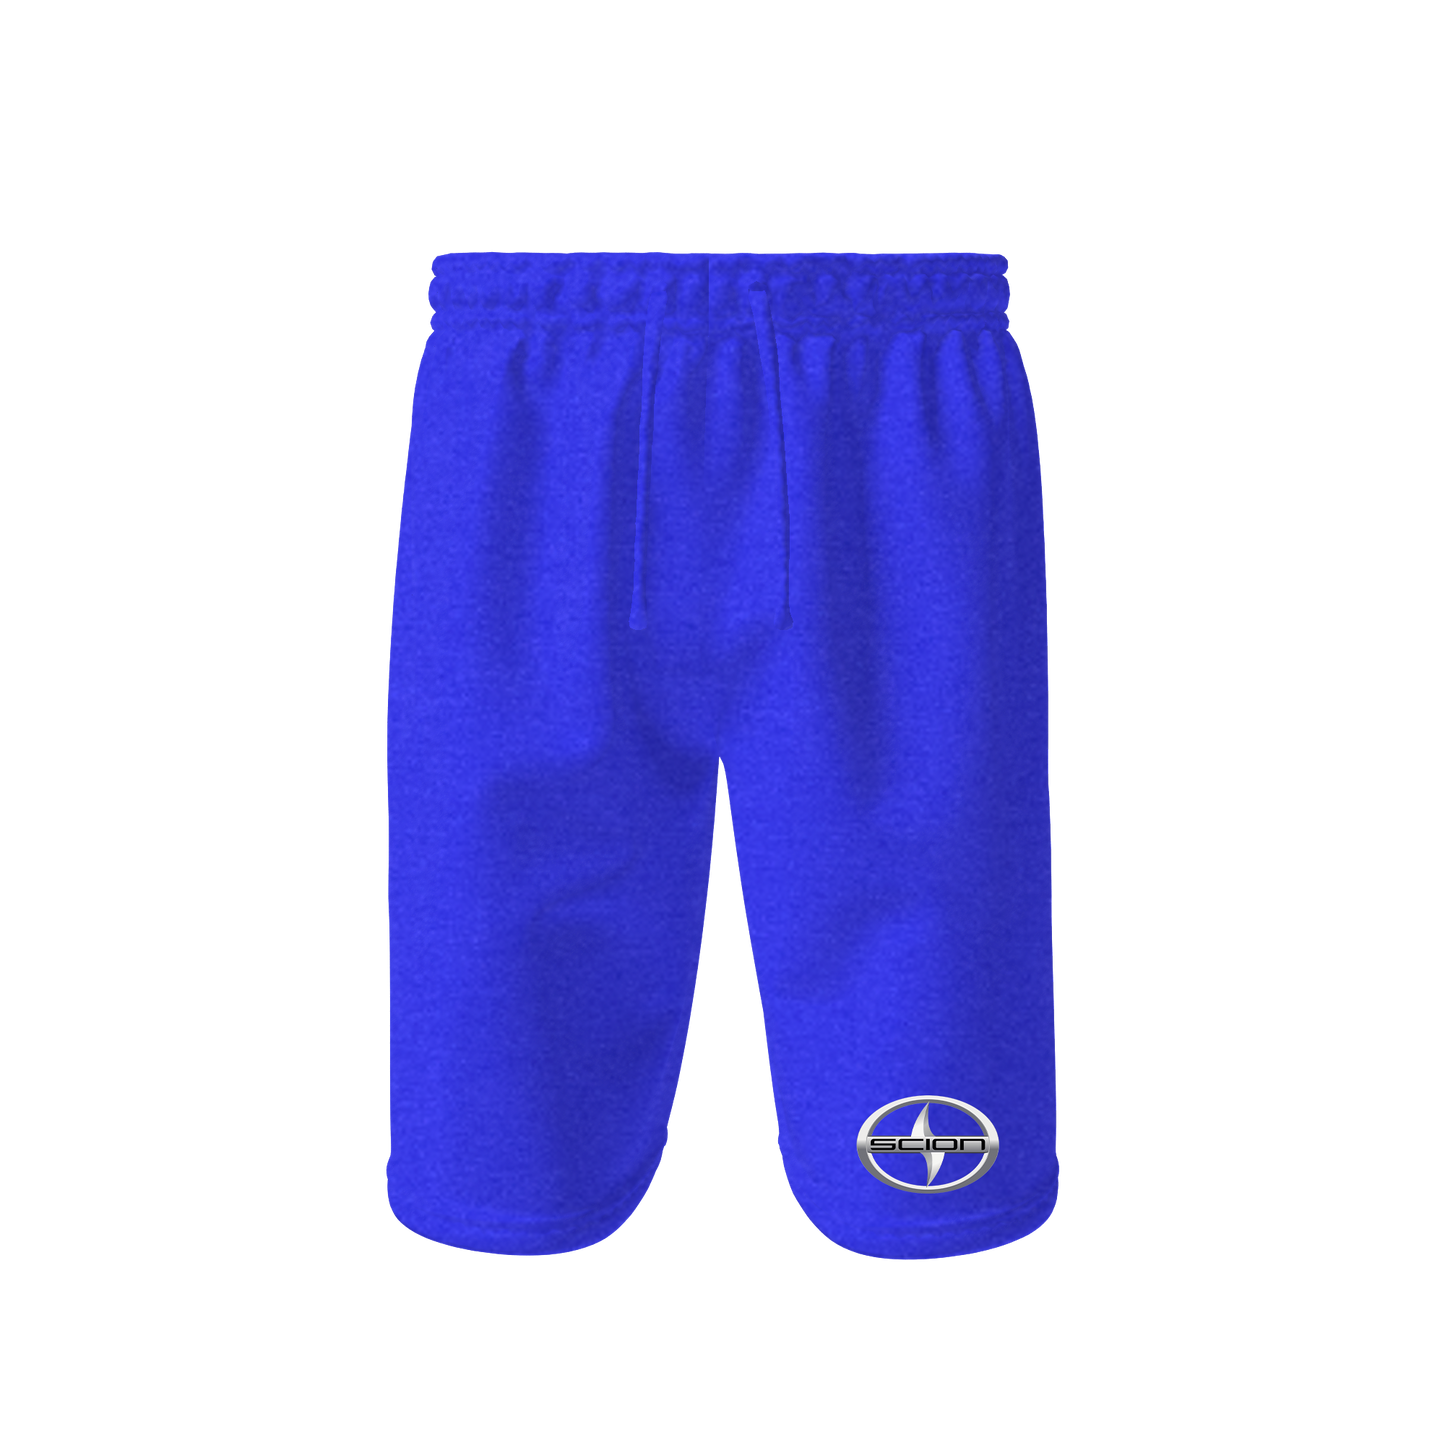 Men’s Scion Car Athletic Fleece Shorts